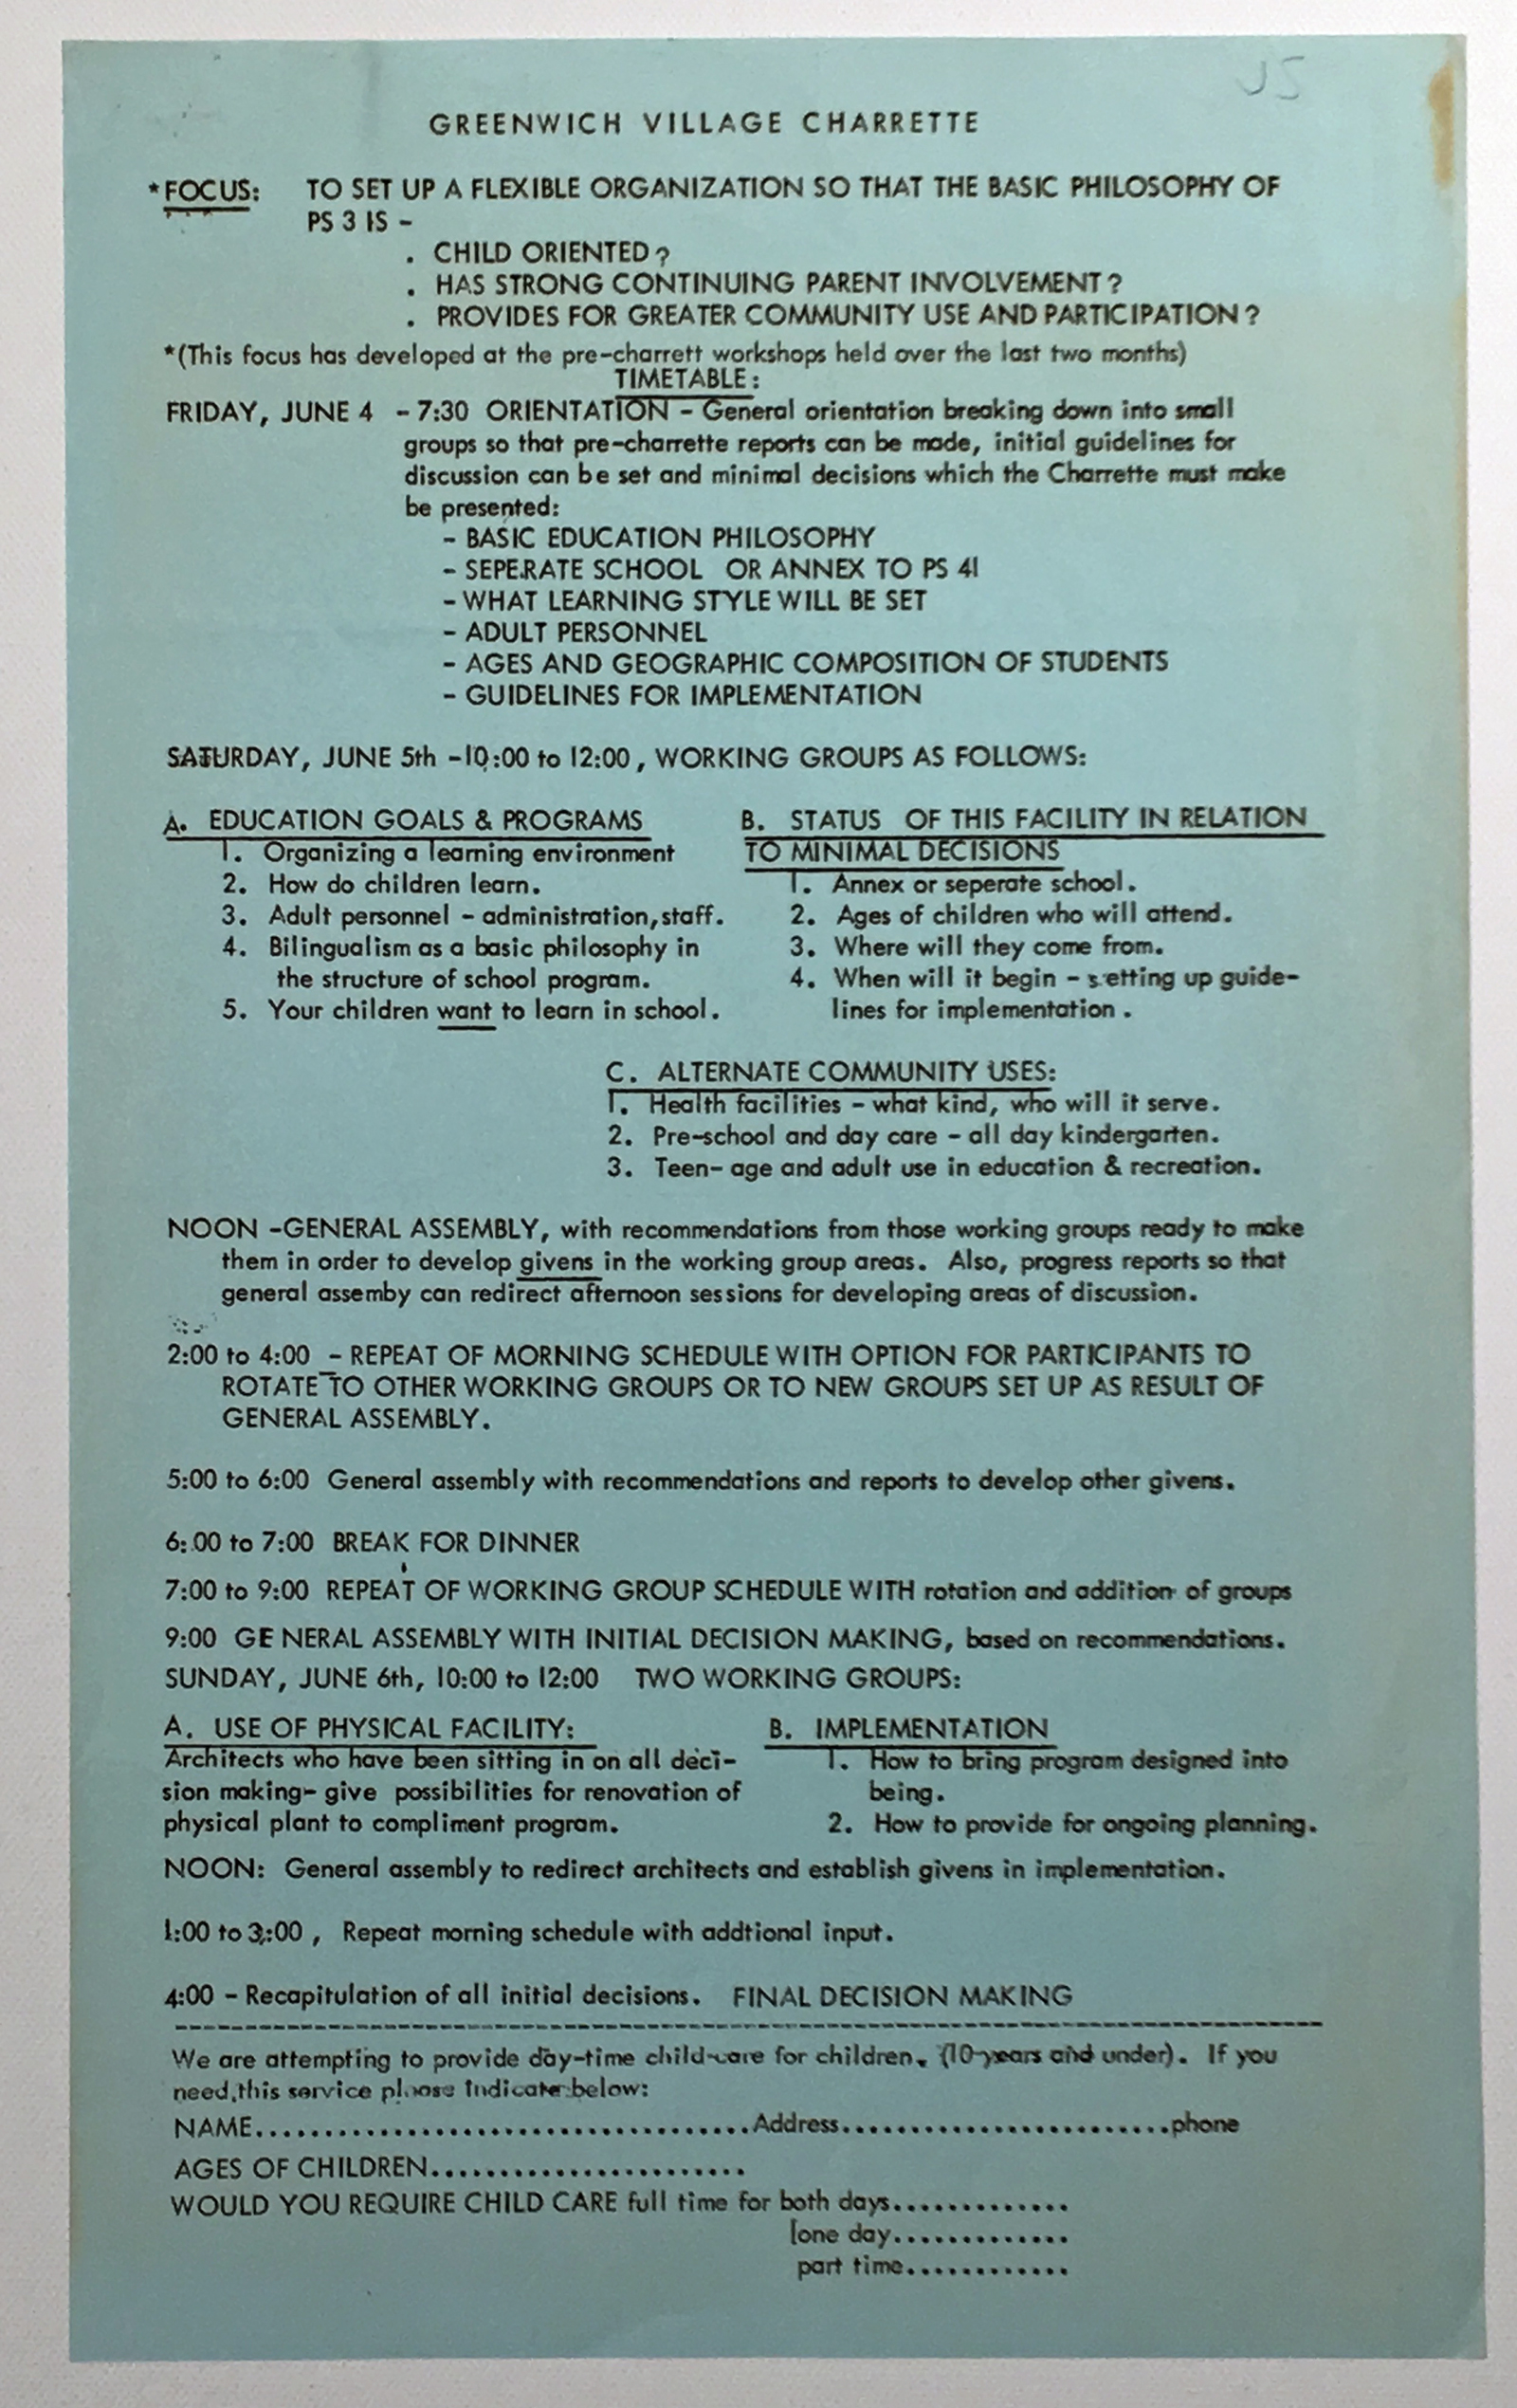 Greenwich Village Charrette Agenda ca. 1970